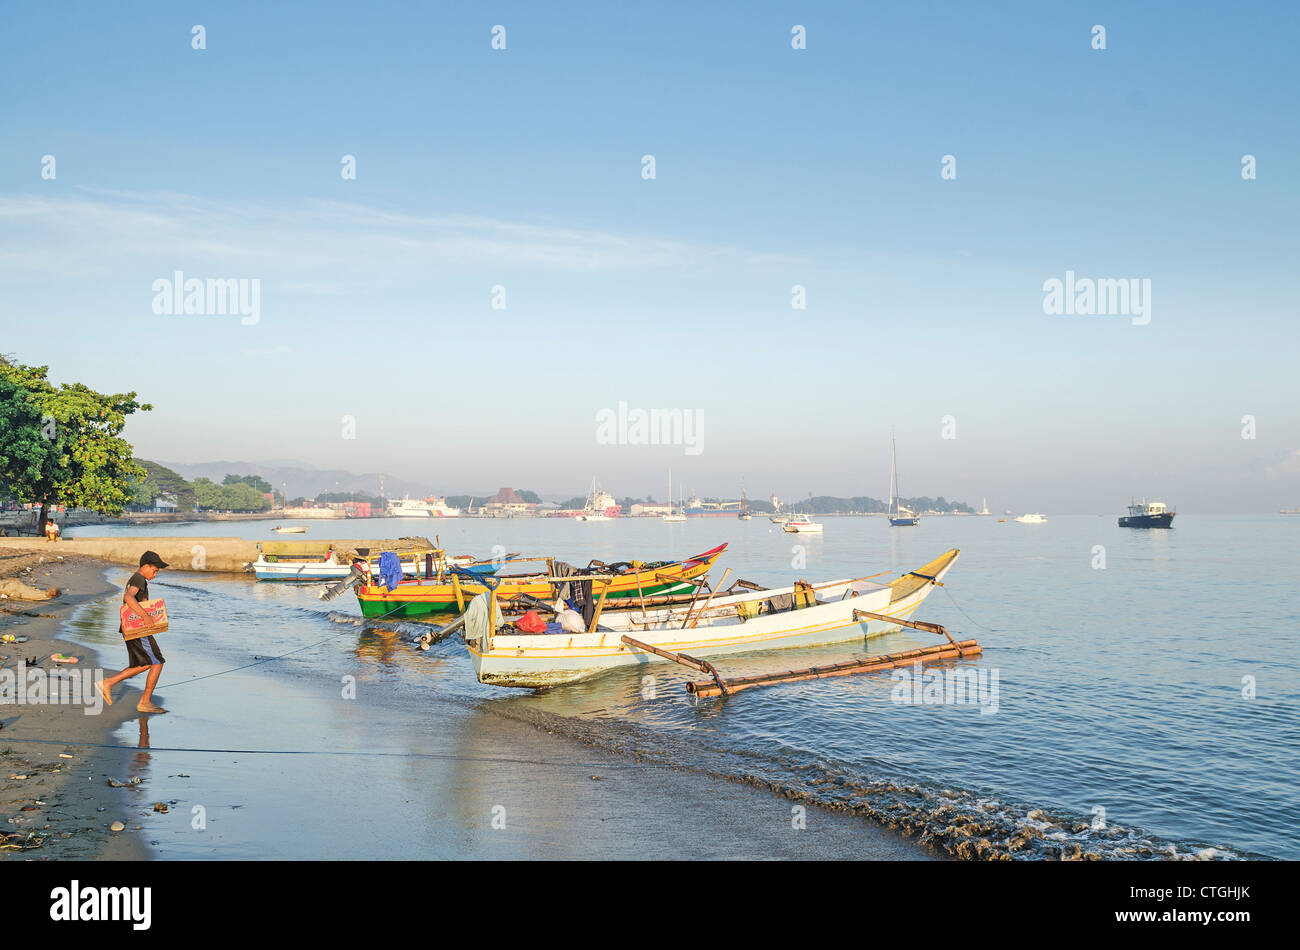 Bateaux de pêche sur la plage à Dili, Timor Leste Timor oriental Banque D'Images